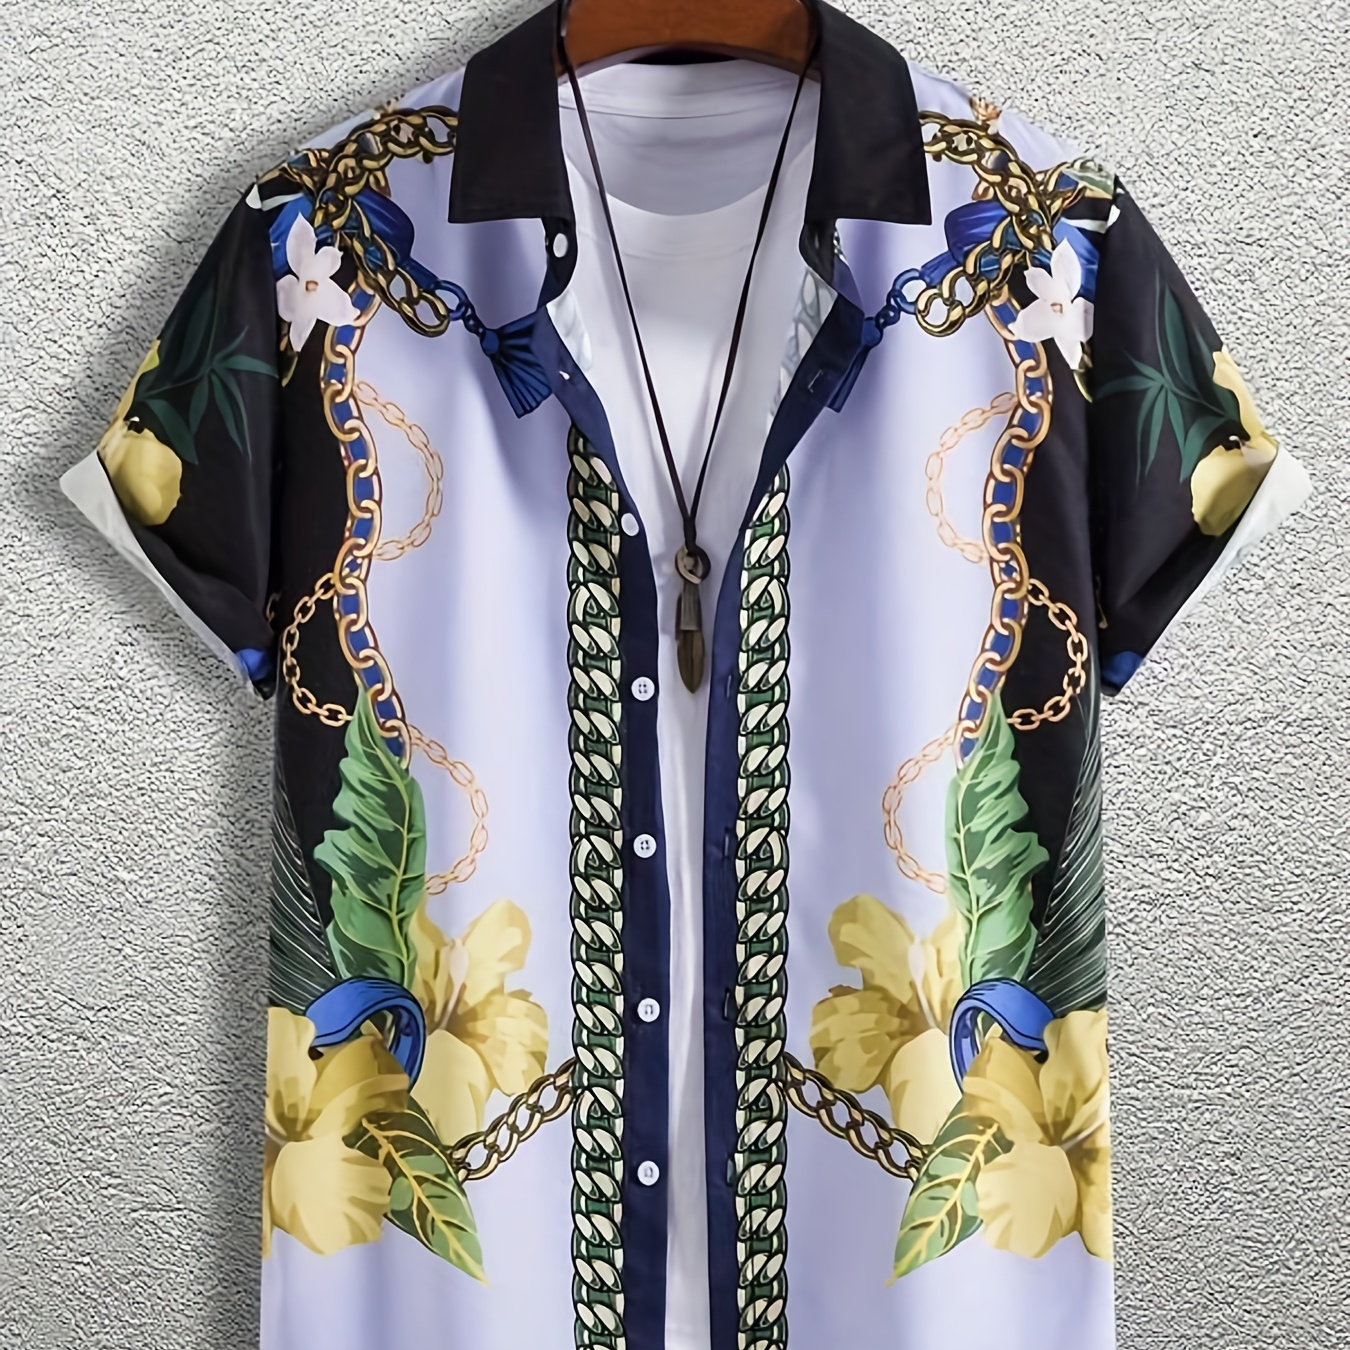 Stylish Golden Chain Print Men's Casual Short Sleeve Shirt, Men's Shirt For  Summer Vacation Resort, Tops For Men, Gift For Men - Temu